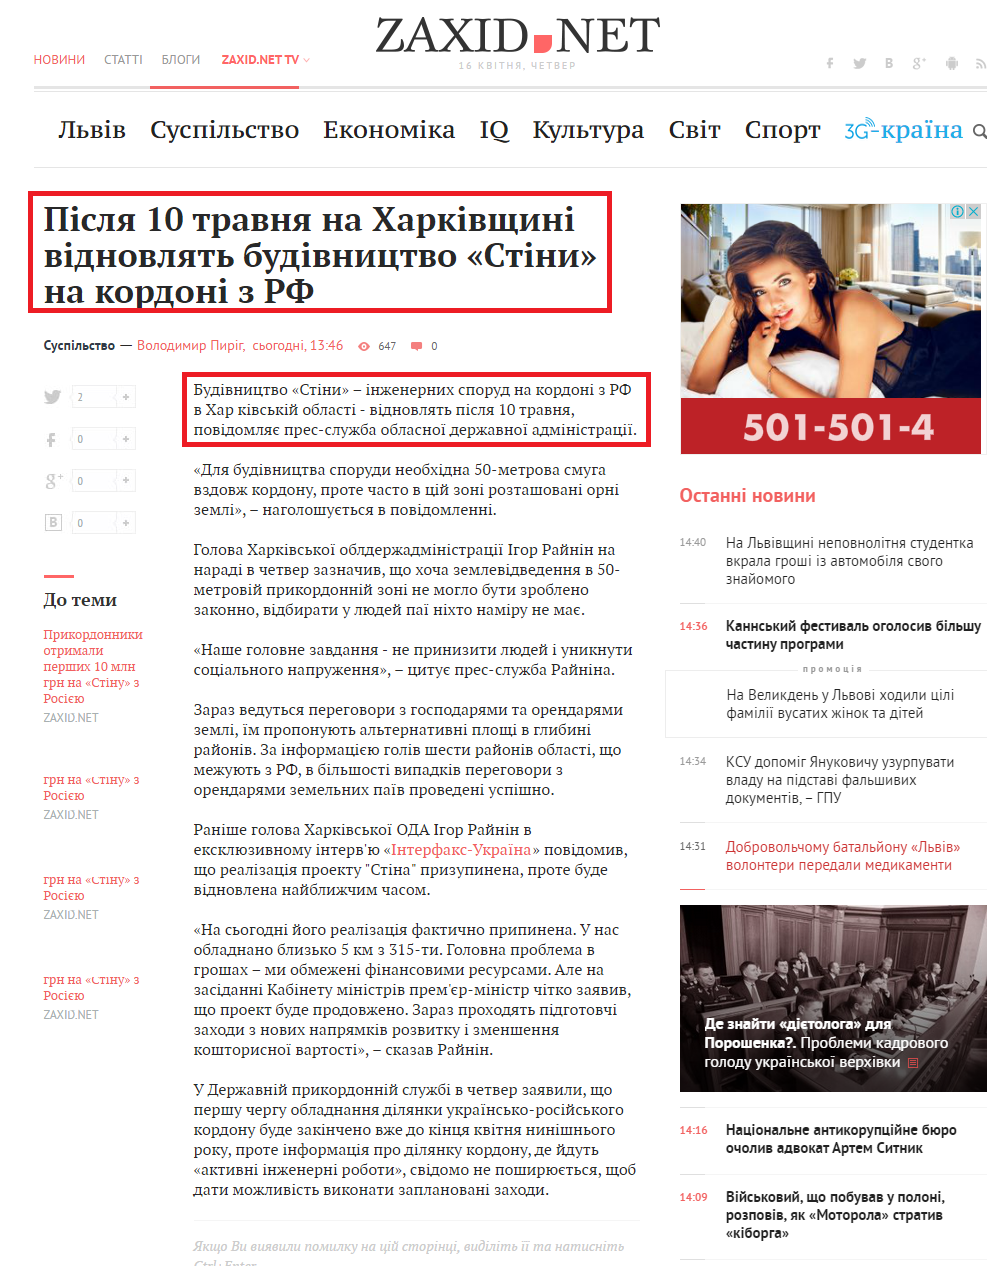 http://zaxid.net/news/showNews.do?pislya_10_travnya_na_harkivshhini_vidnovlyat_budivnitstvo_stini_na_kordoni_z_rf&objectId=1348043